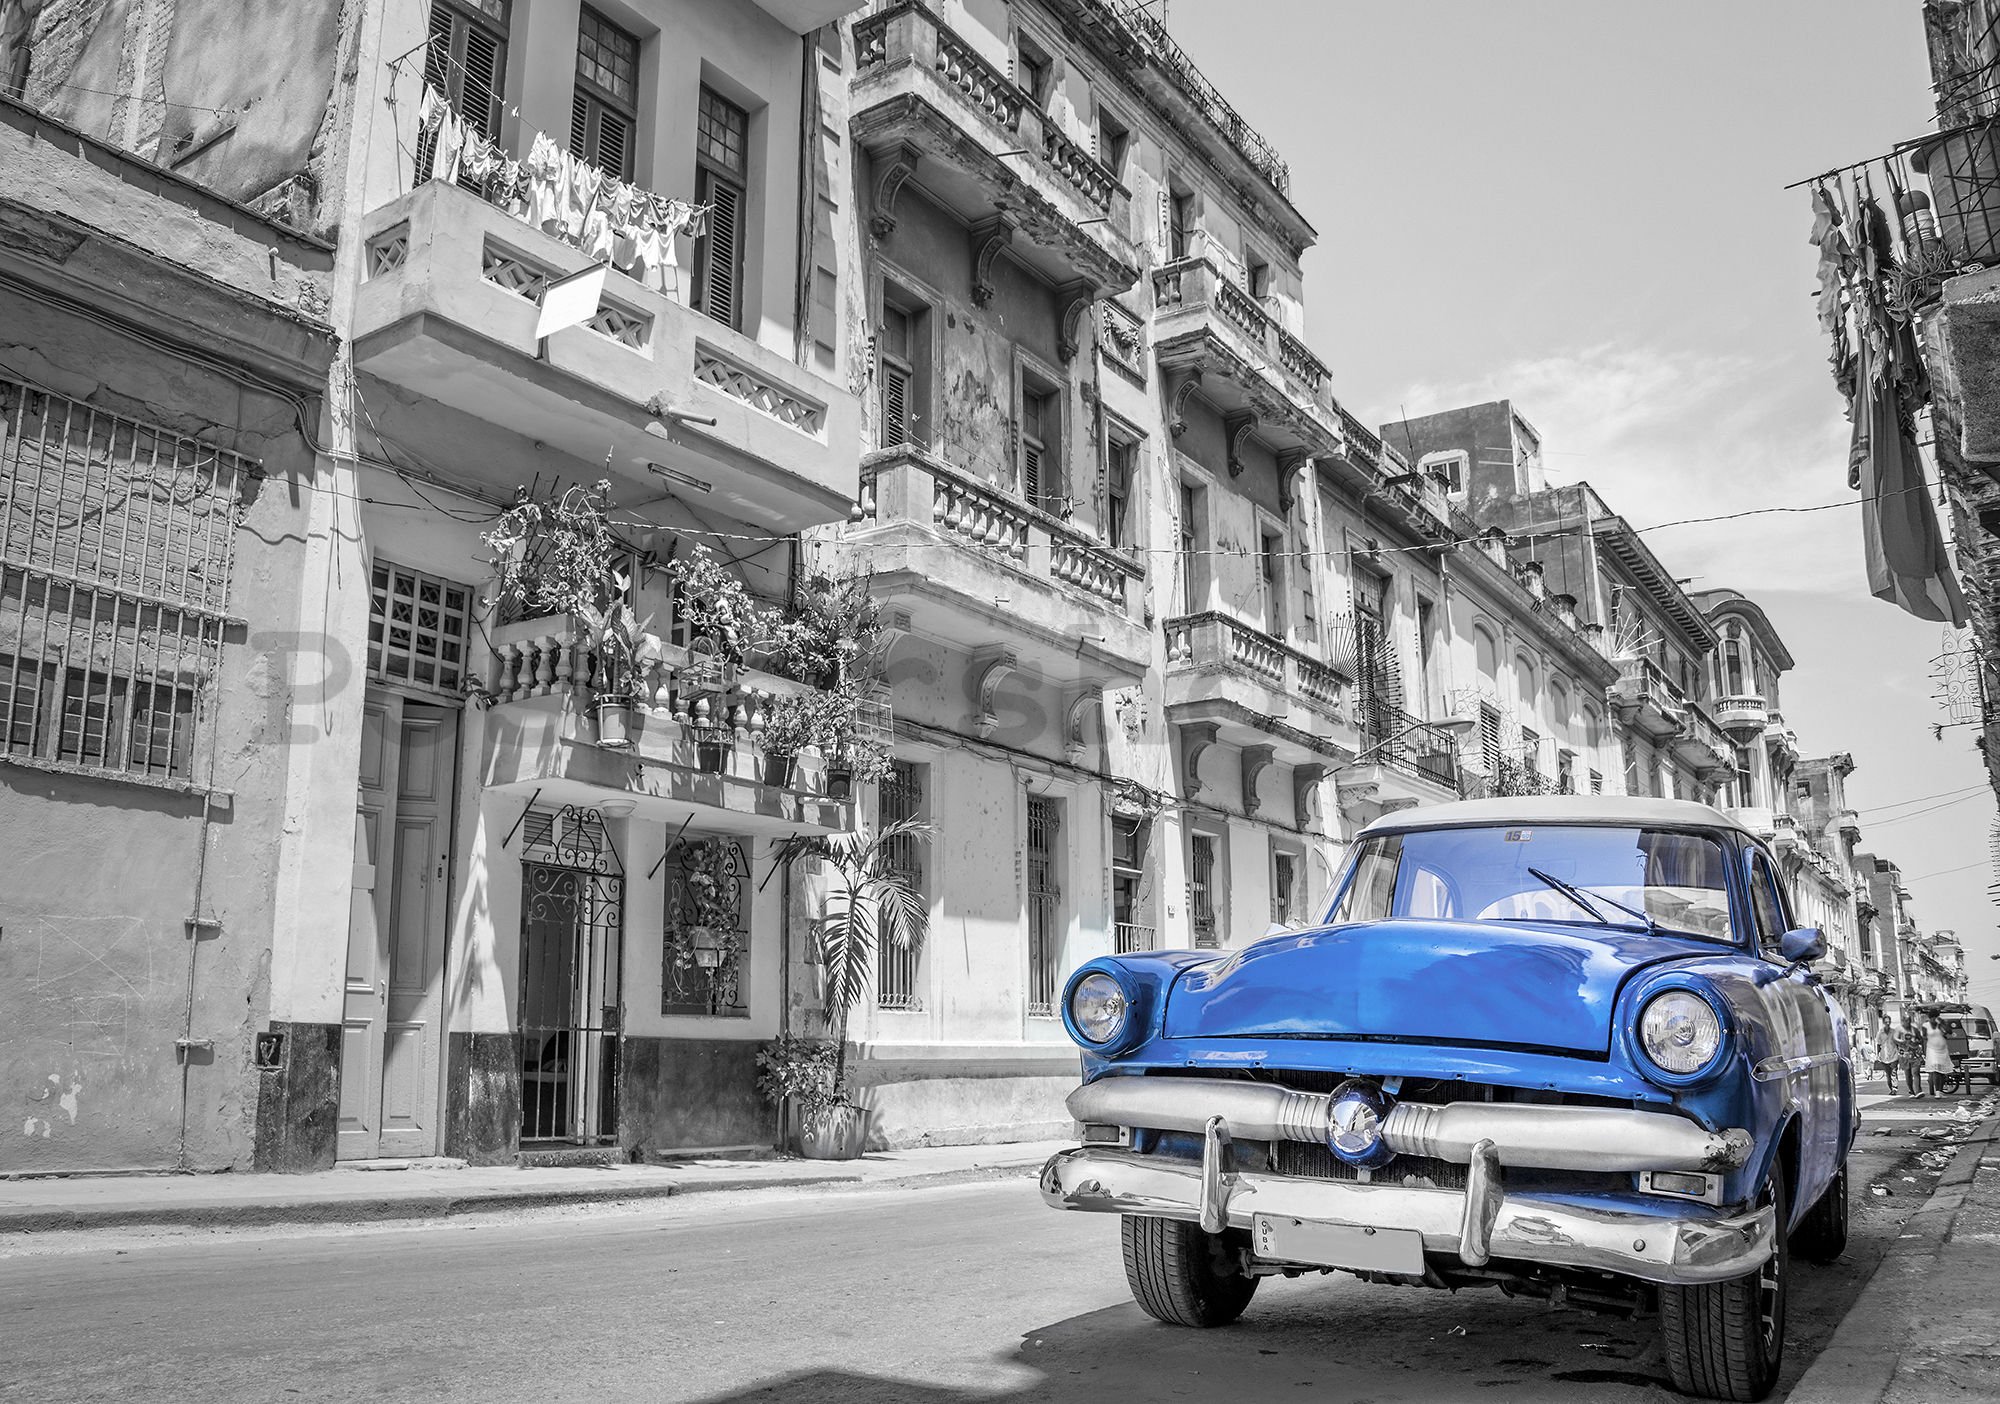 Fototapeta vliesová: Havana modré auto - 254x368 cm